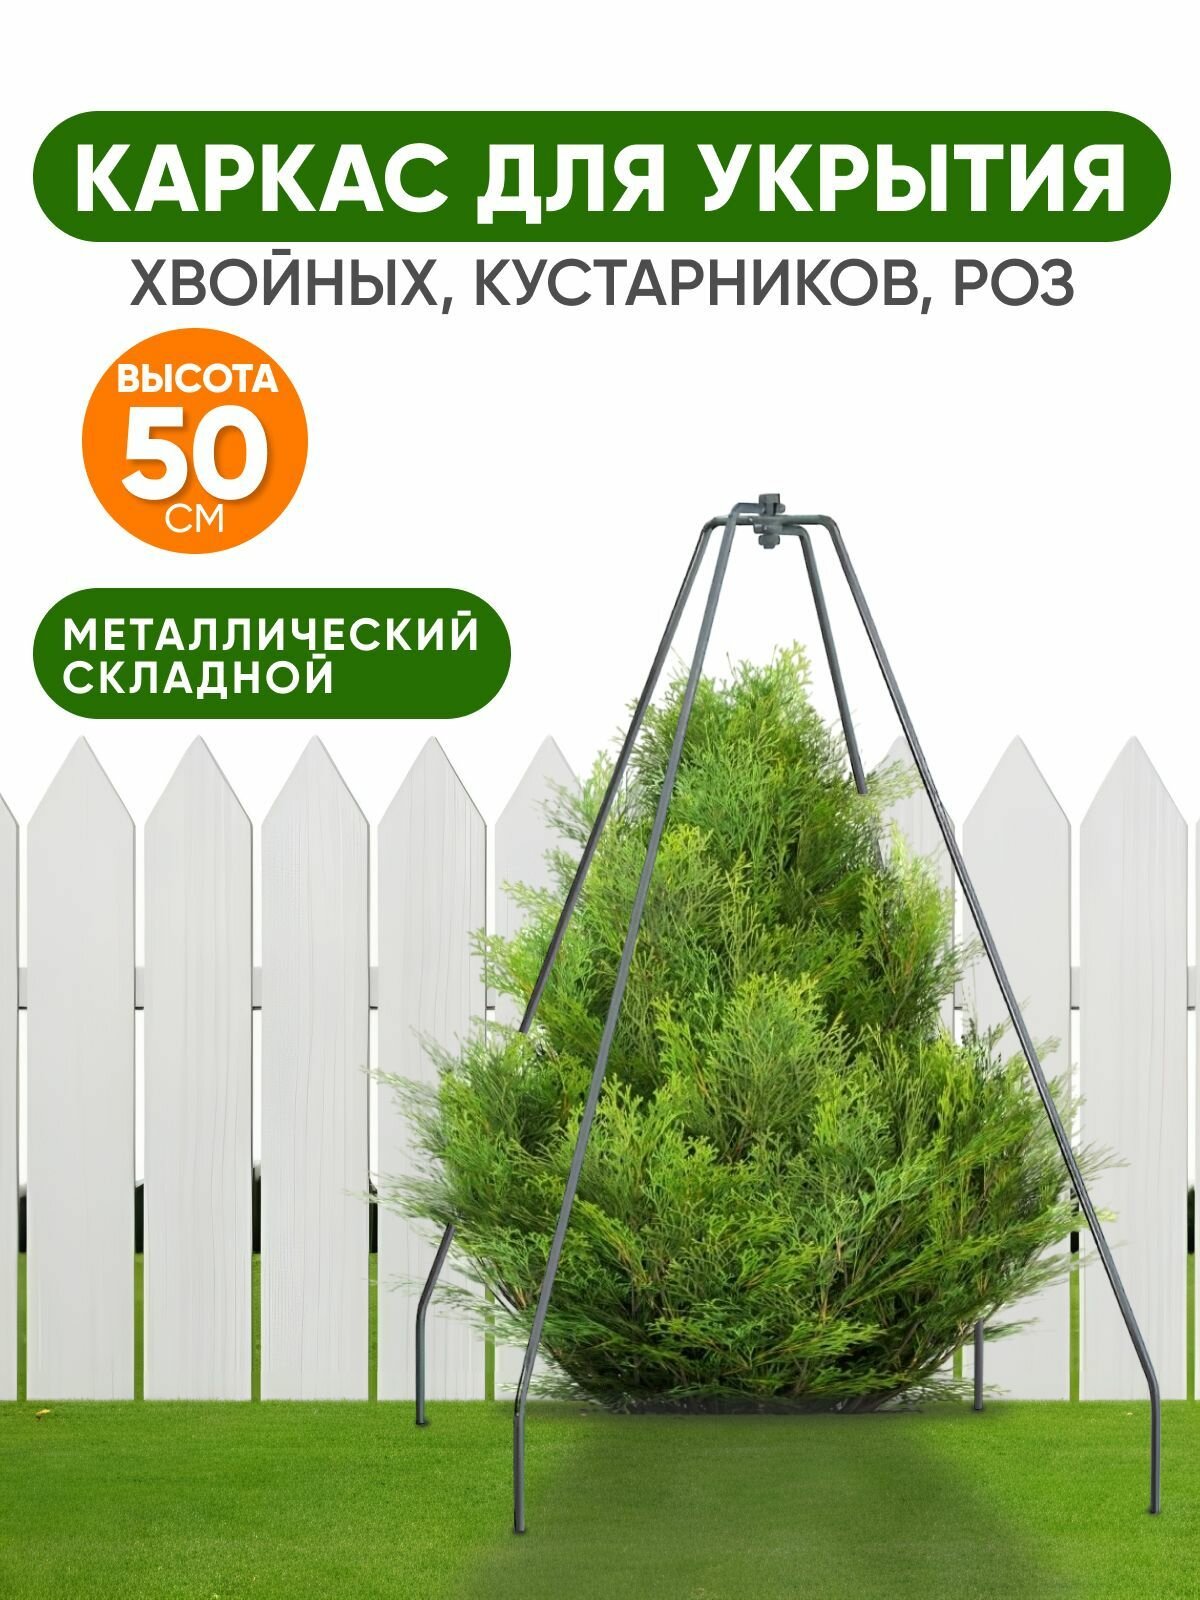 Набор каркасов 3 шт каркас для укрытий растений на зиму 50 см